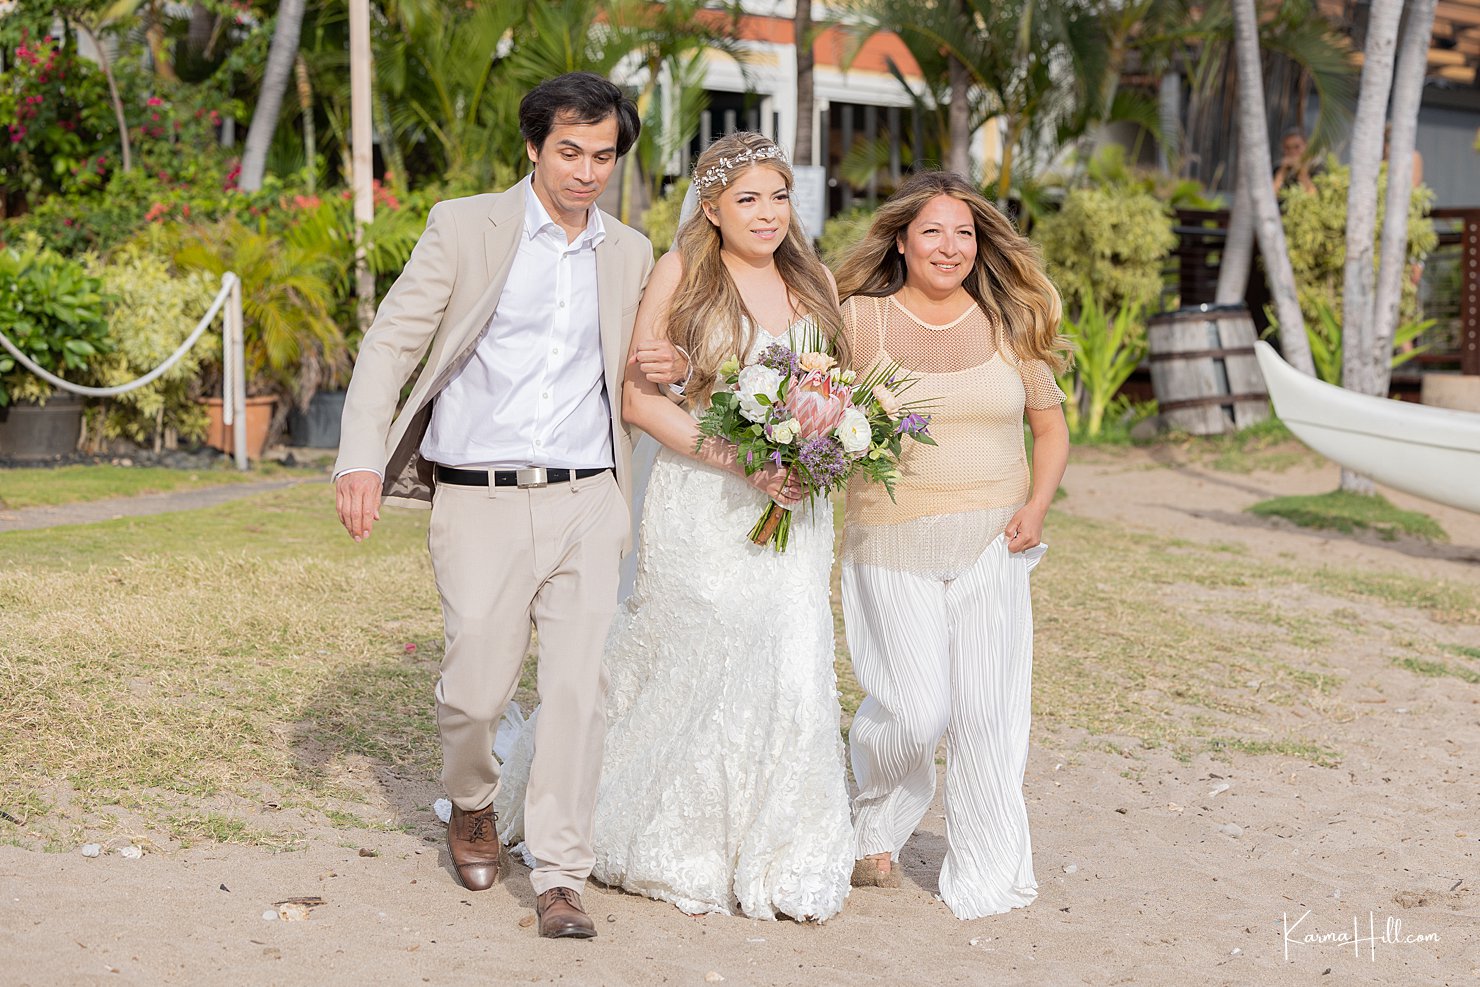 A bridal entrance on the beach in Maui